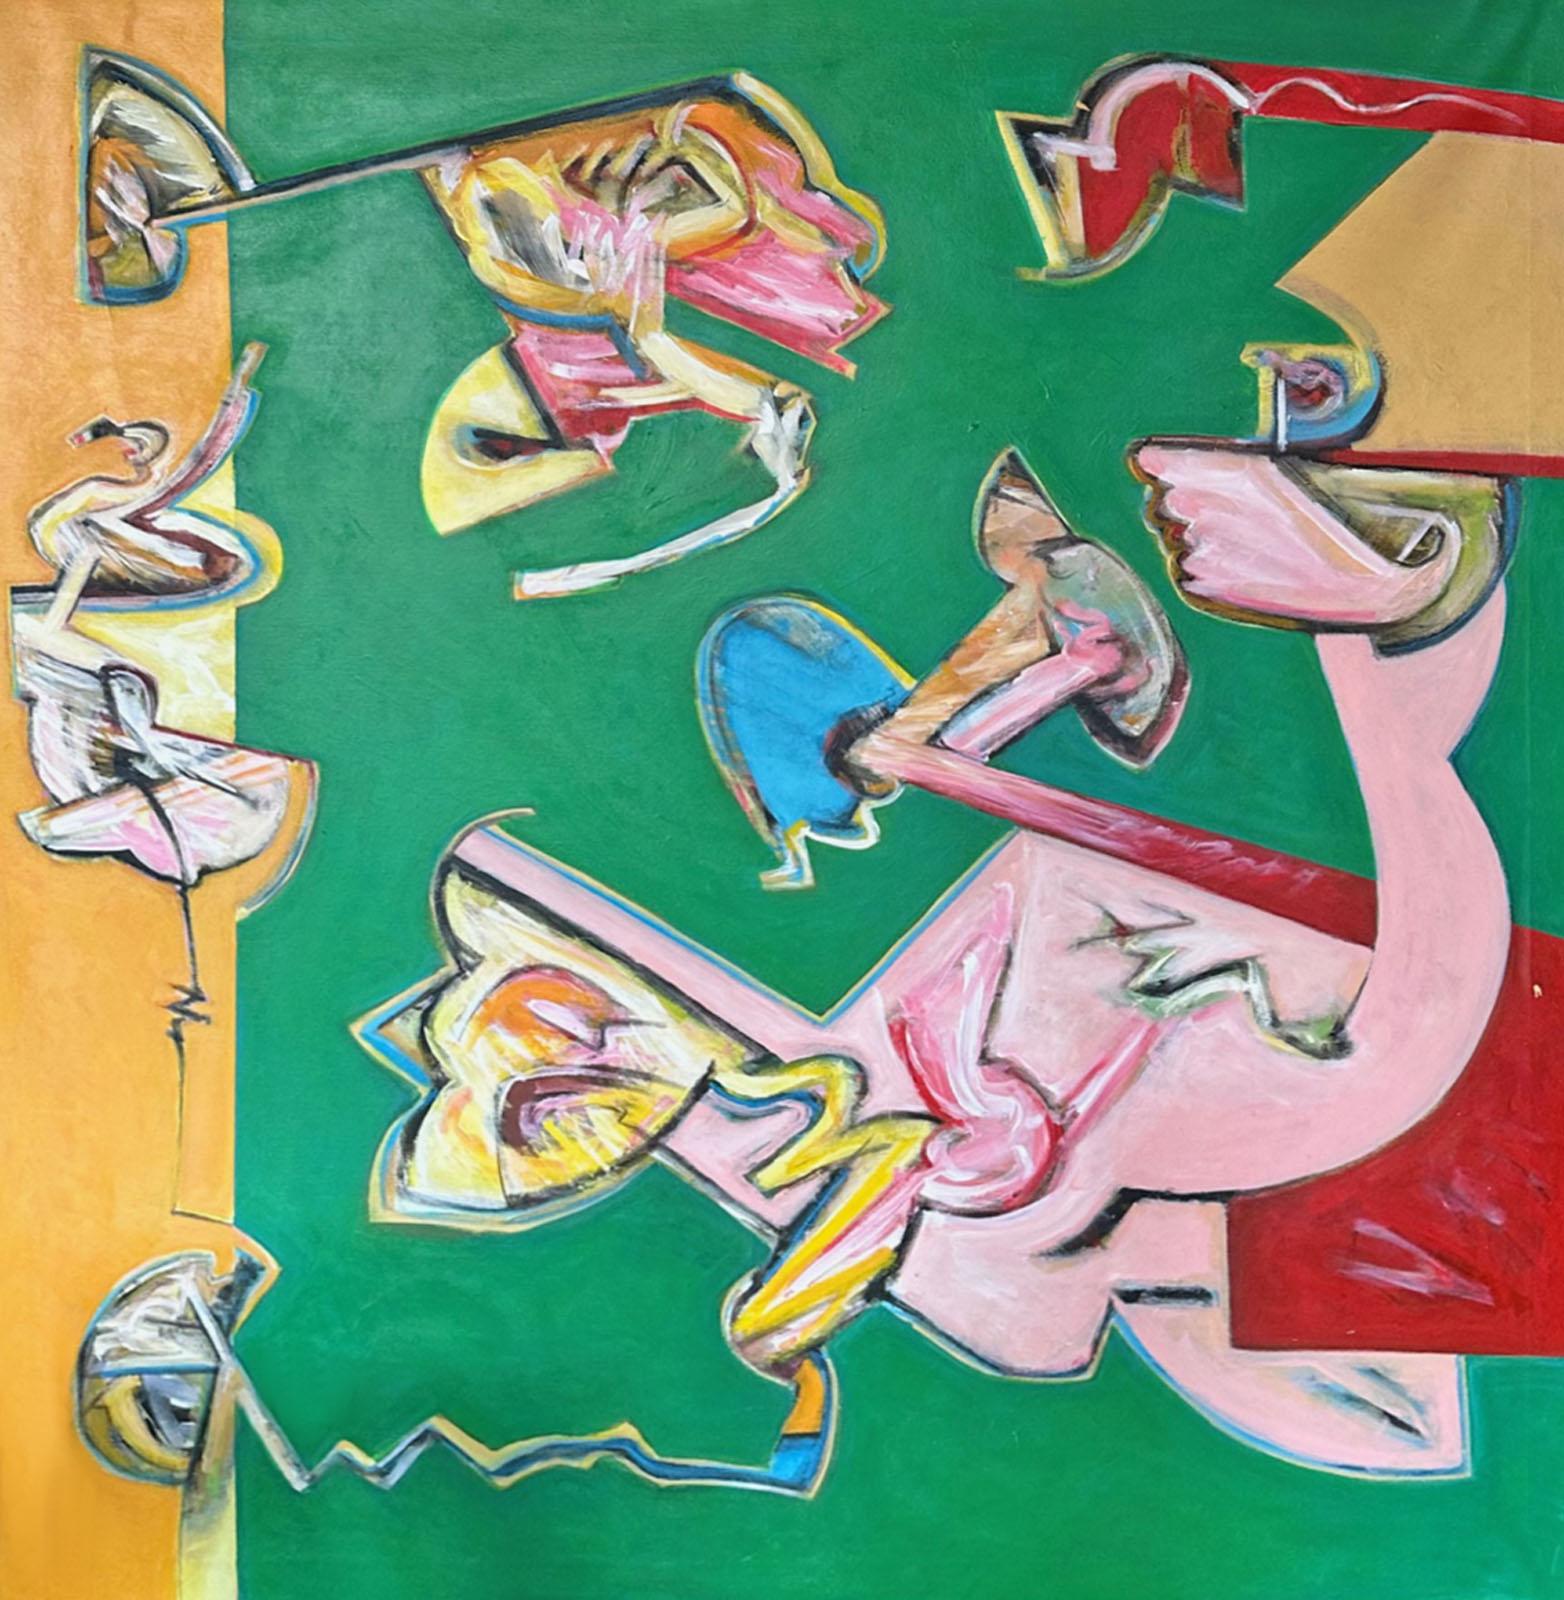 Ein Gemälde in Acryl auf Leinwand von James L. Bruch (1942-2023). Dieses abstrakte Werk hat einen grünen Hintergrund, der von bunten Formen in Rosa, Rot, Blau und Gelb unterbrochen wird. Ein gelber Streifen akzentuiert das Bild auf der linken Seite